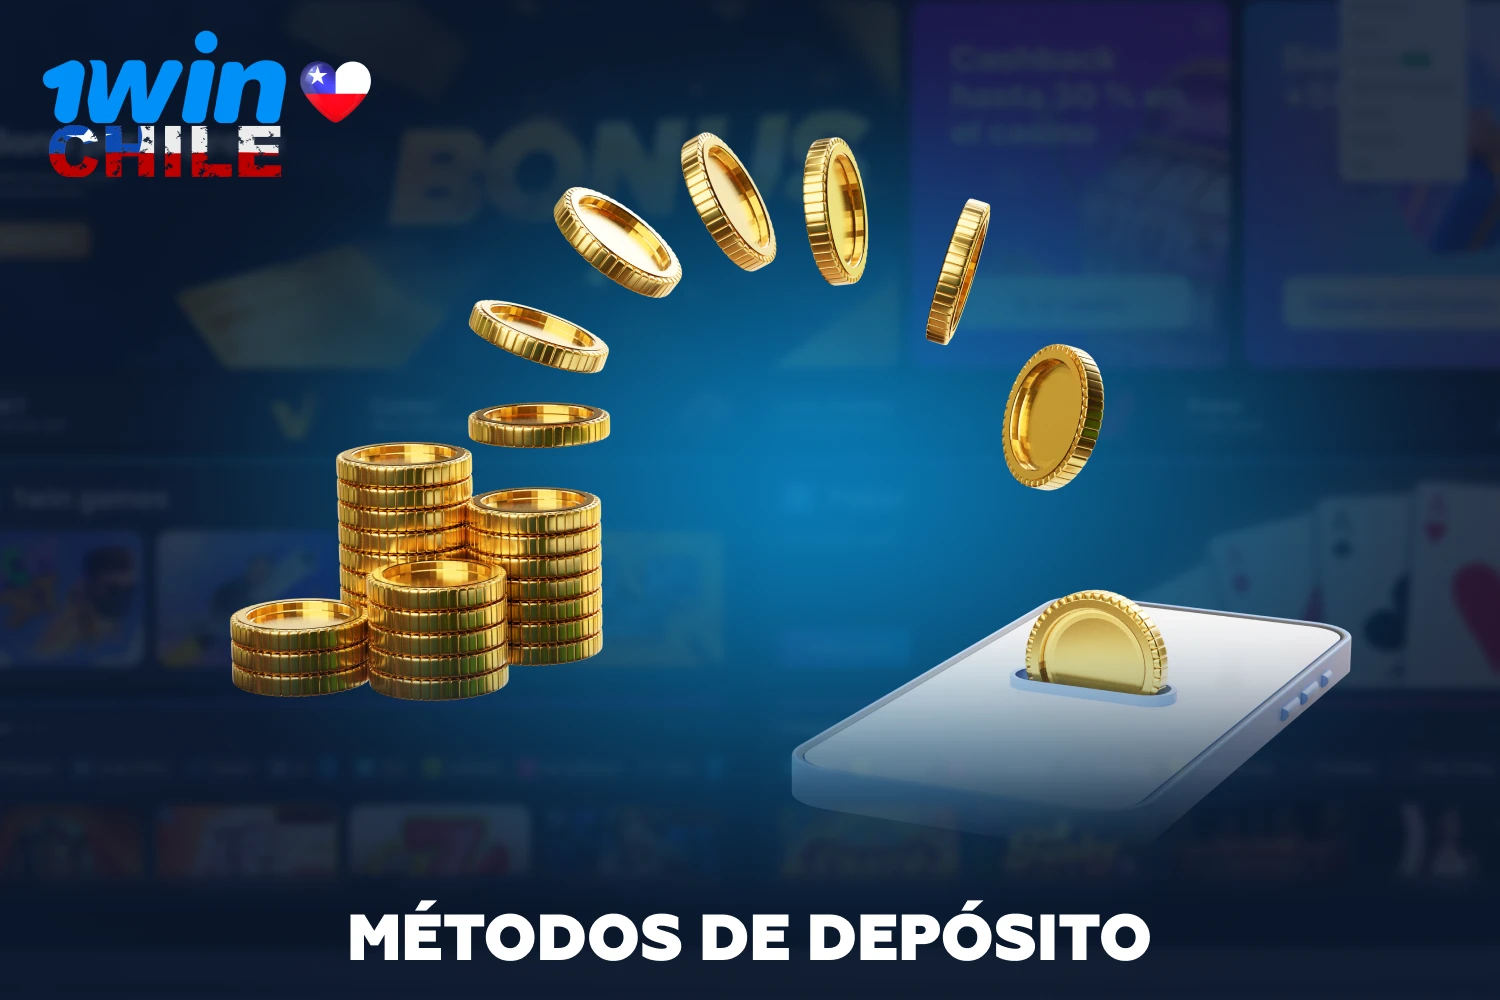 Inmediatamente después de abrir una cuenta 1win, los chilenos tendrán acceso a todos los juegos y funciones del casino por dinero real